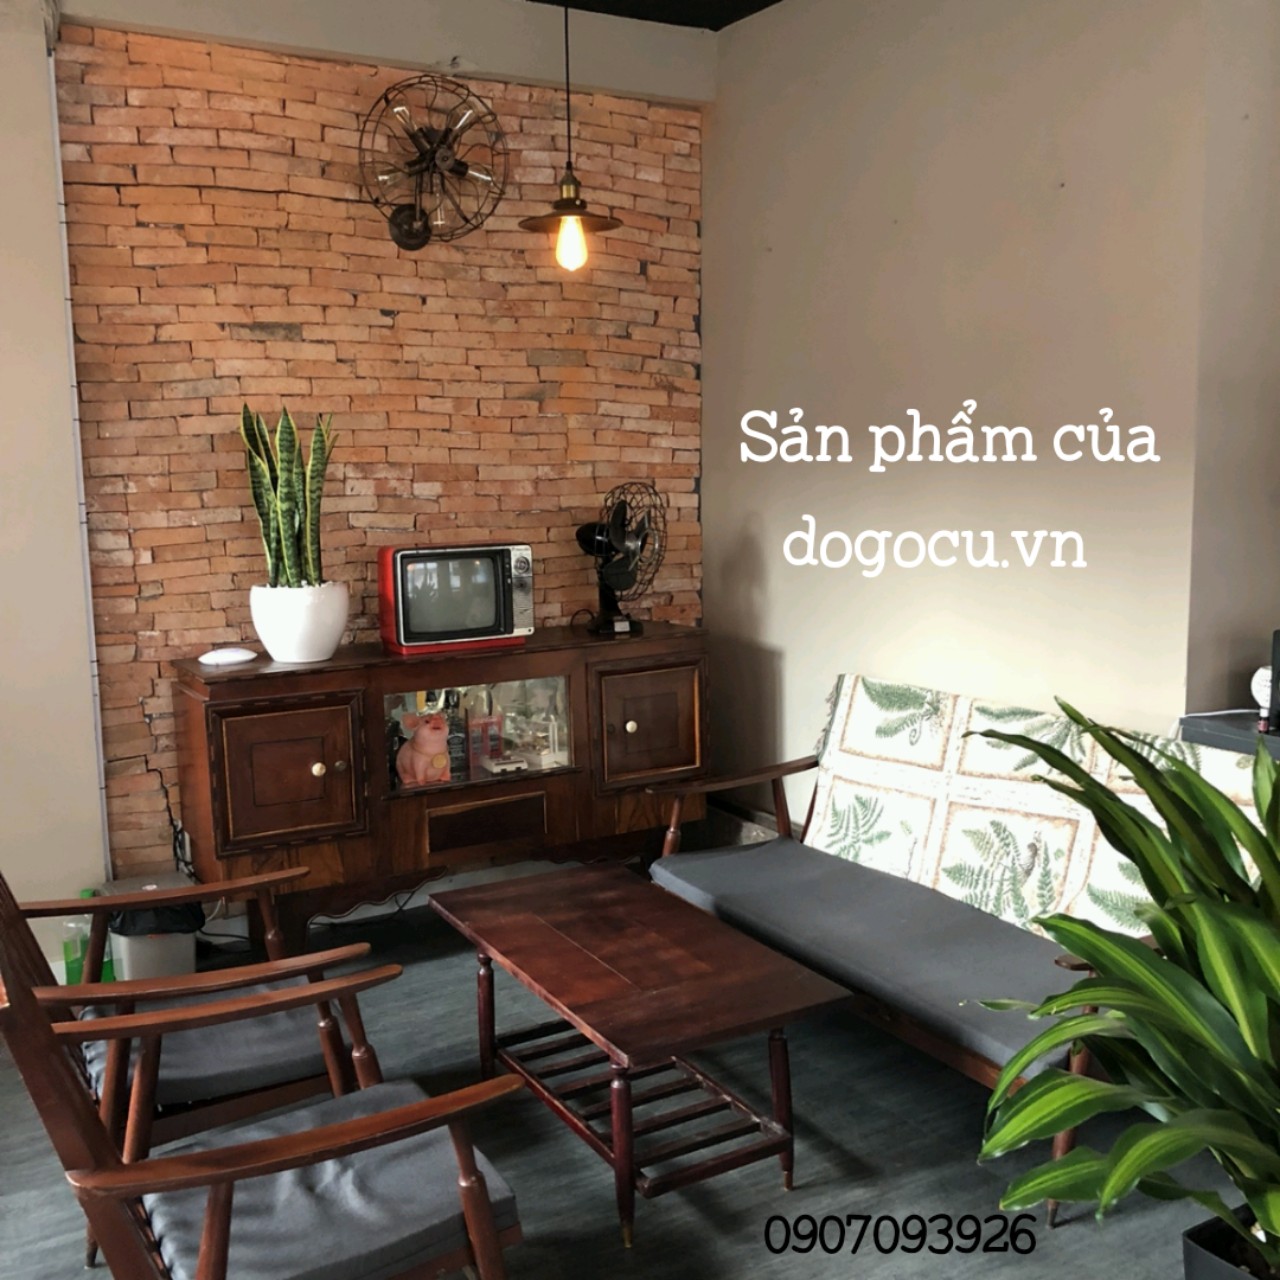 Bàn ghế gỗ phòng khách của chúng tôi sẽ đưa bạn đến một thế giới của nét đẹp và lòng tự hào. Mỗi chiếc bàn và ghế được chế tác từ gỗ tự nhiên và tạo ra một không gian hiện đại mà vẫn giữ được nét truyền thống tinh tế.